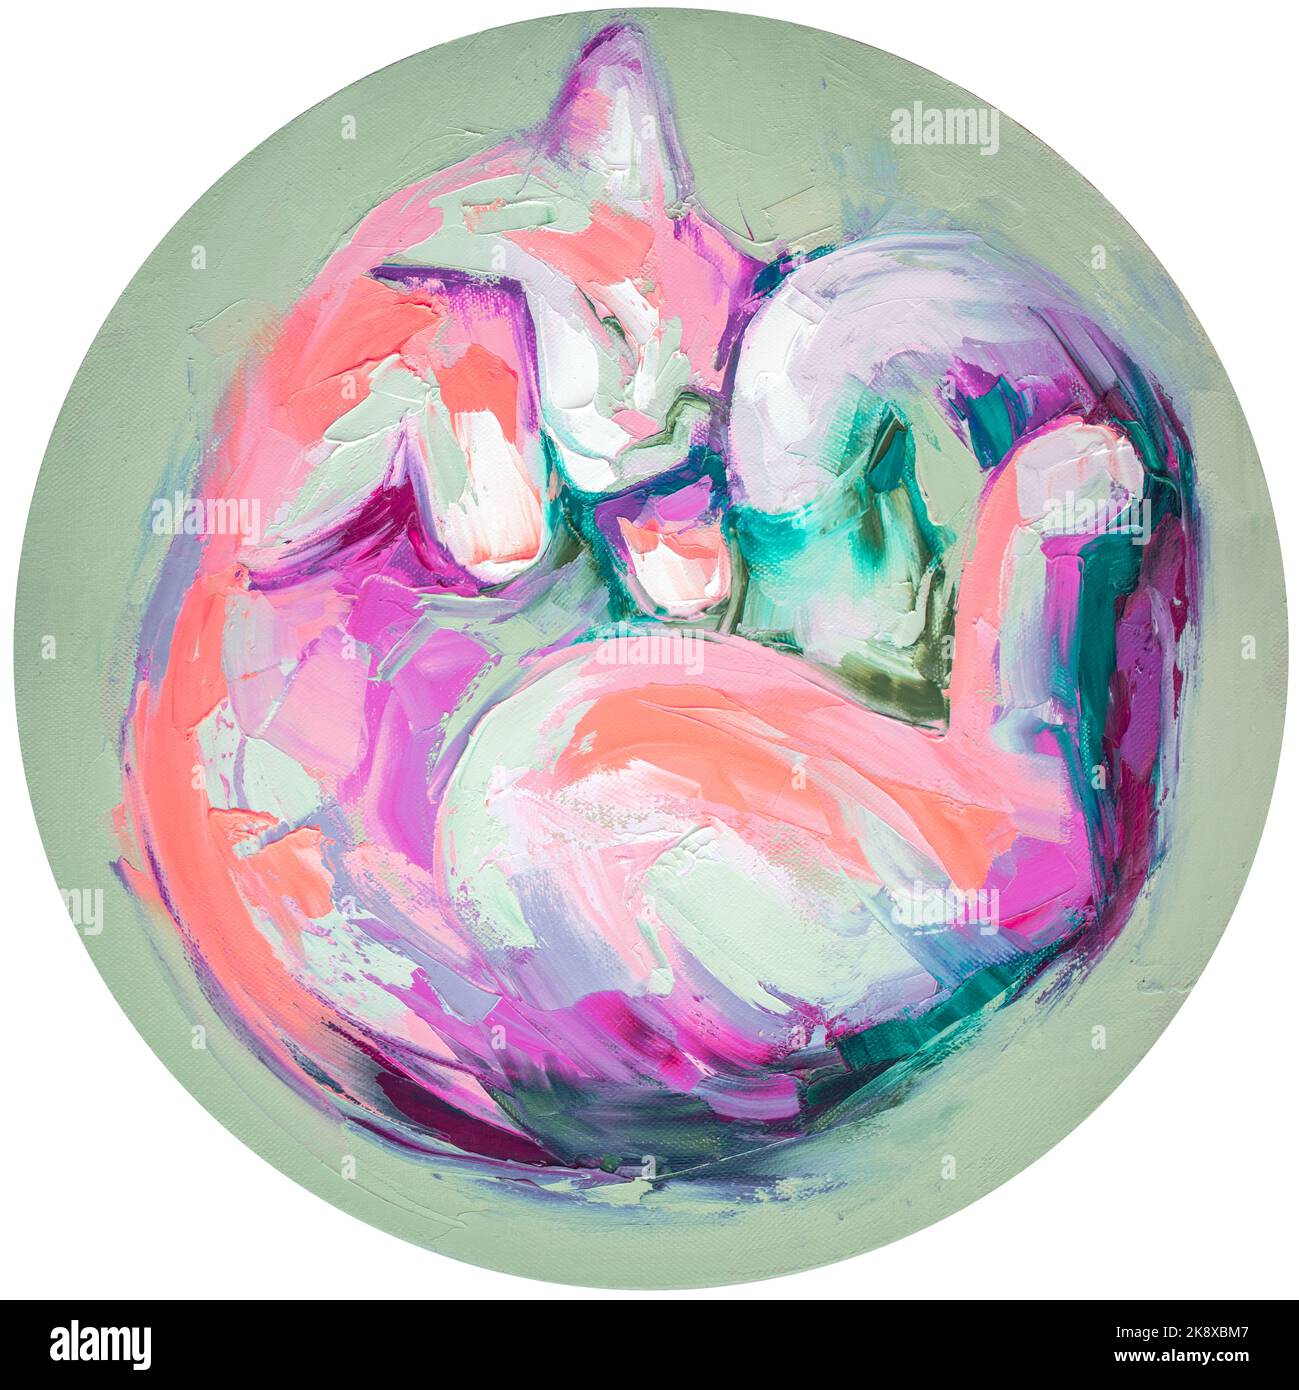 L'image de l'huile d'un chat s'est enroulée vers le haut de la peinture dans des tons multicolores. Peinture abstraite conceptuelle. Gros plan huile de peinture et couteau à palette sur toile. Banque D'Images